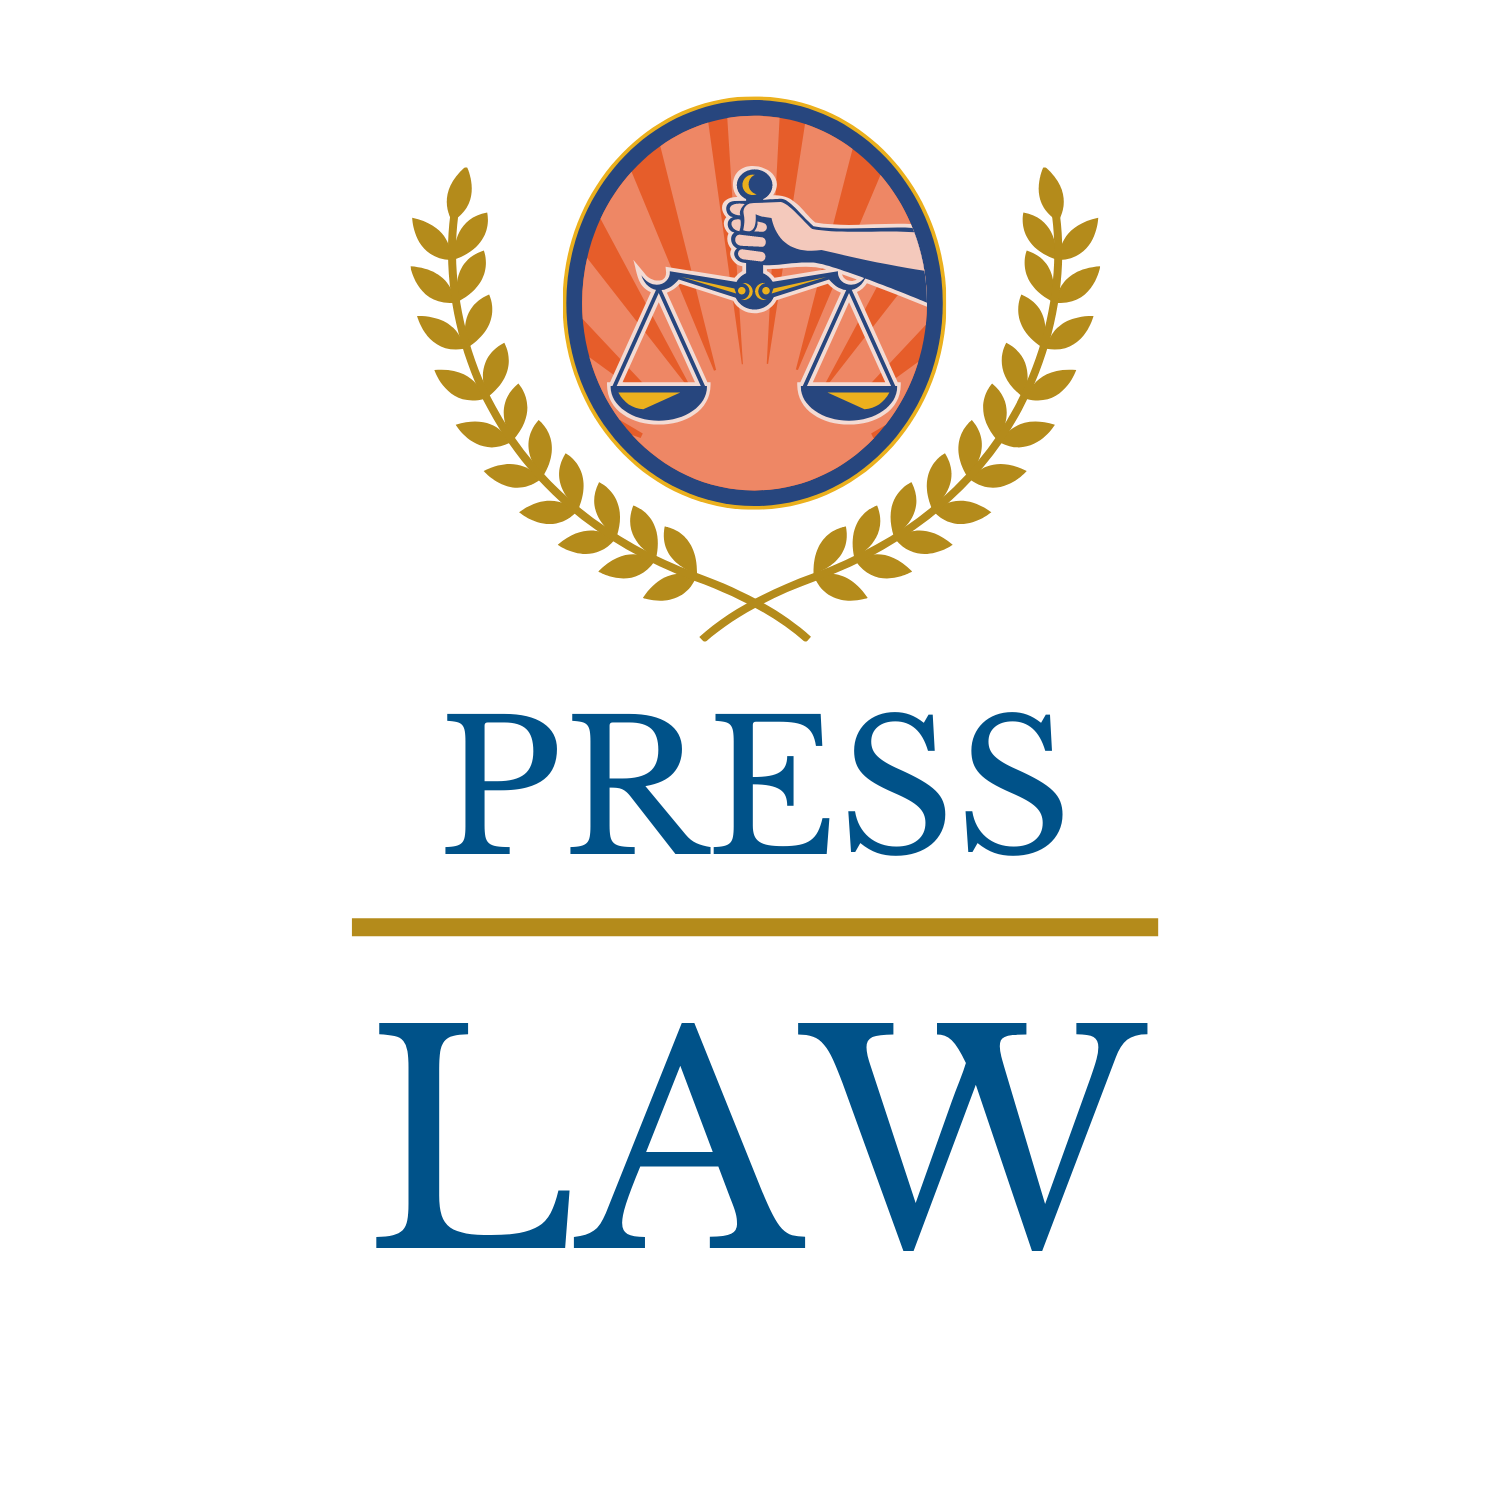 Press Law